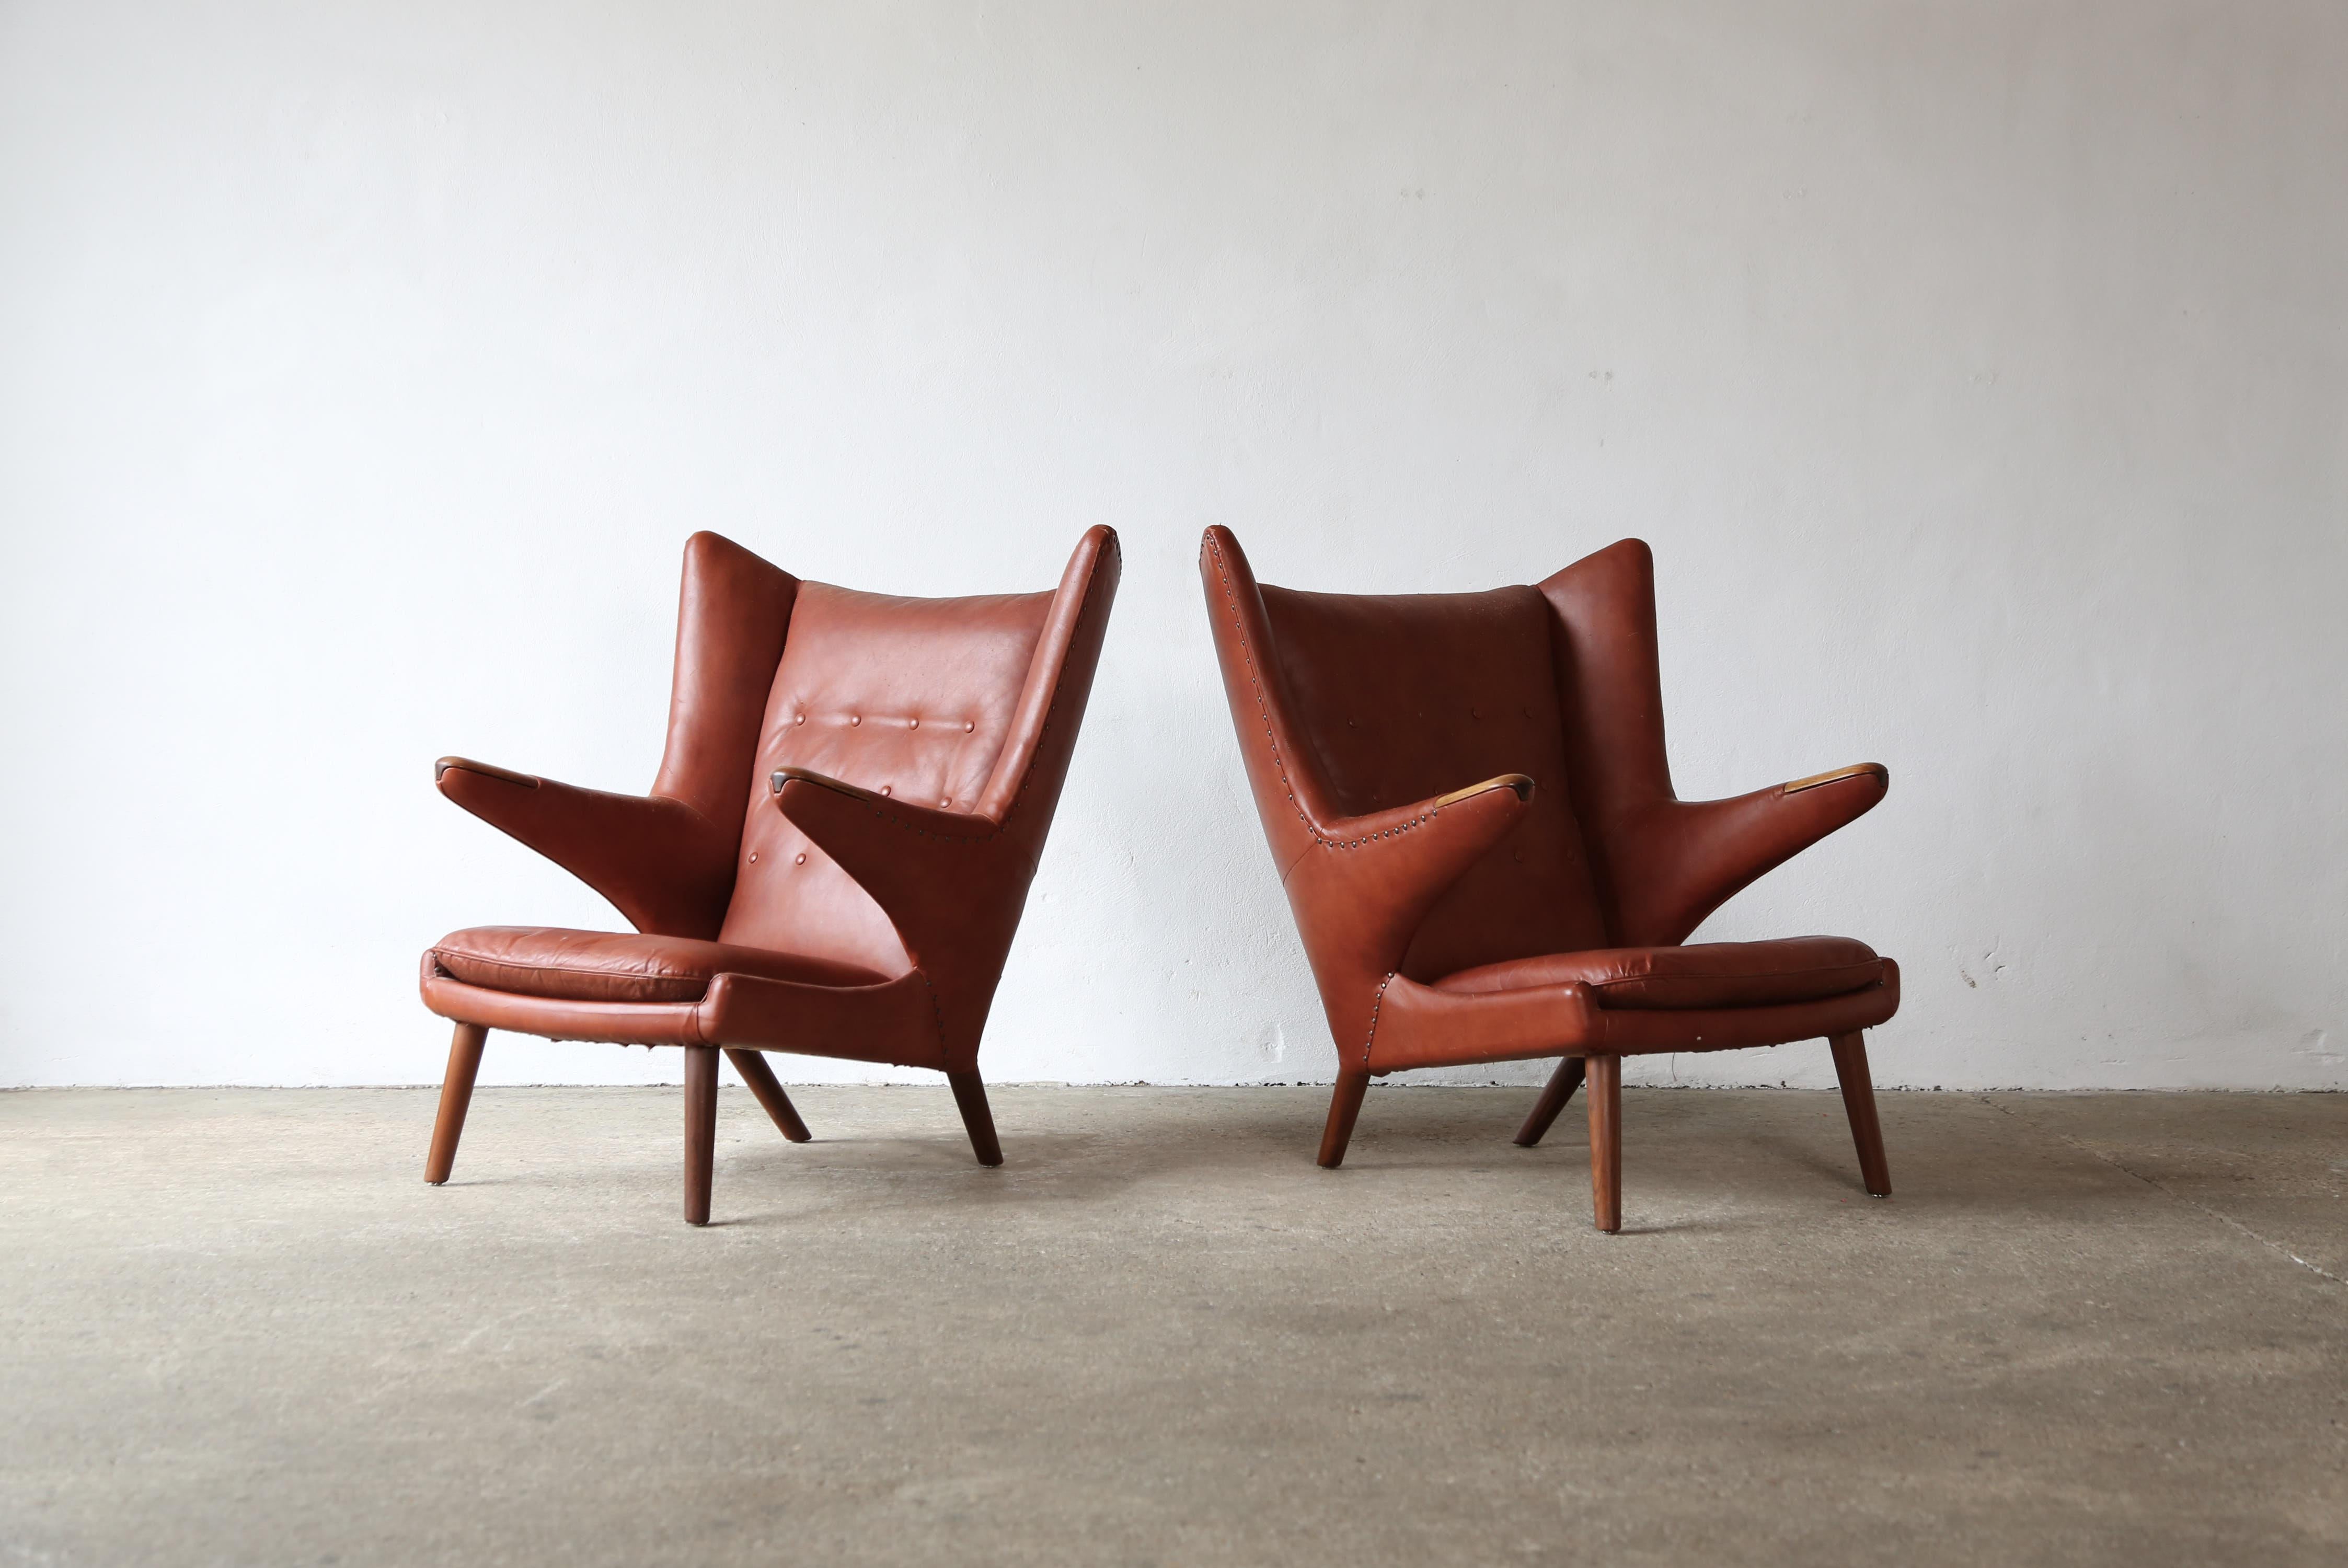 Rare paire originale de chaises Papa Bear de Hans Wegner, conçues en 1947 et produites par AP Stolen au Danemark dans les années 1950. Le tissu présente des signes d'usure excessifs, c'est pourquoi ils sont proposés dans leur état d'origine actuel